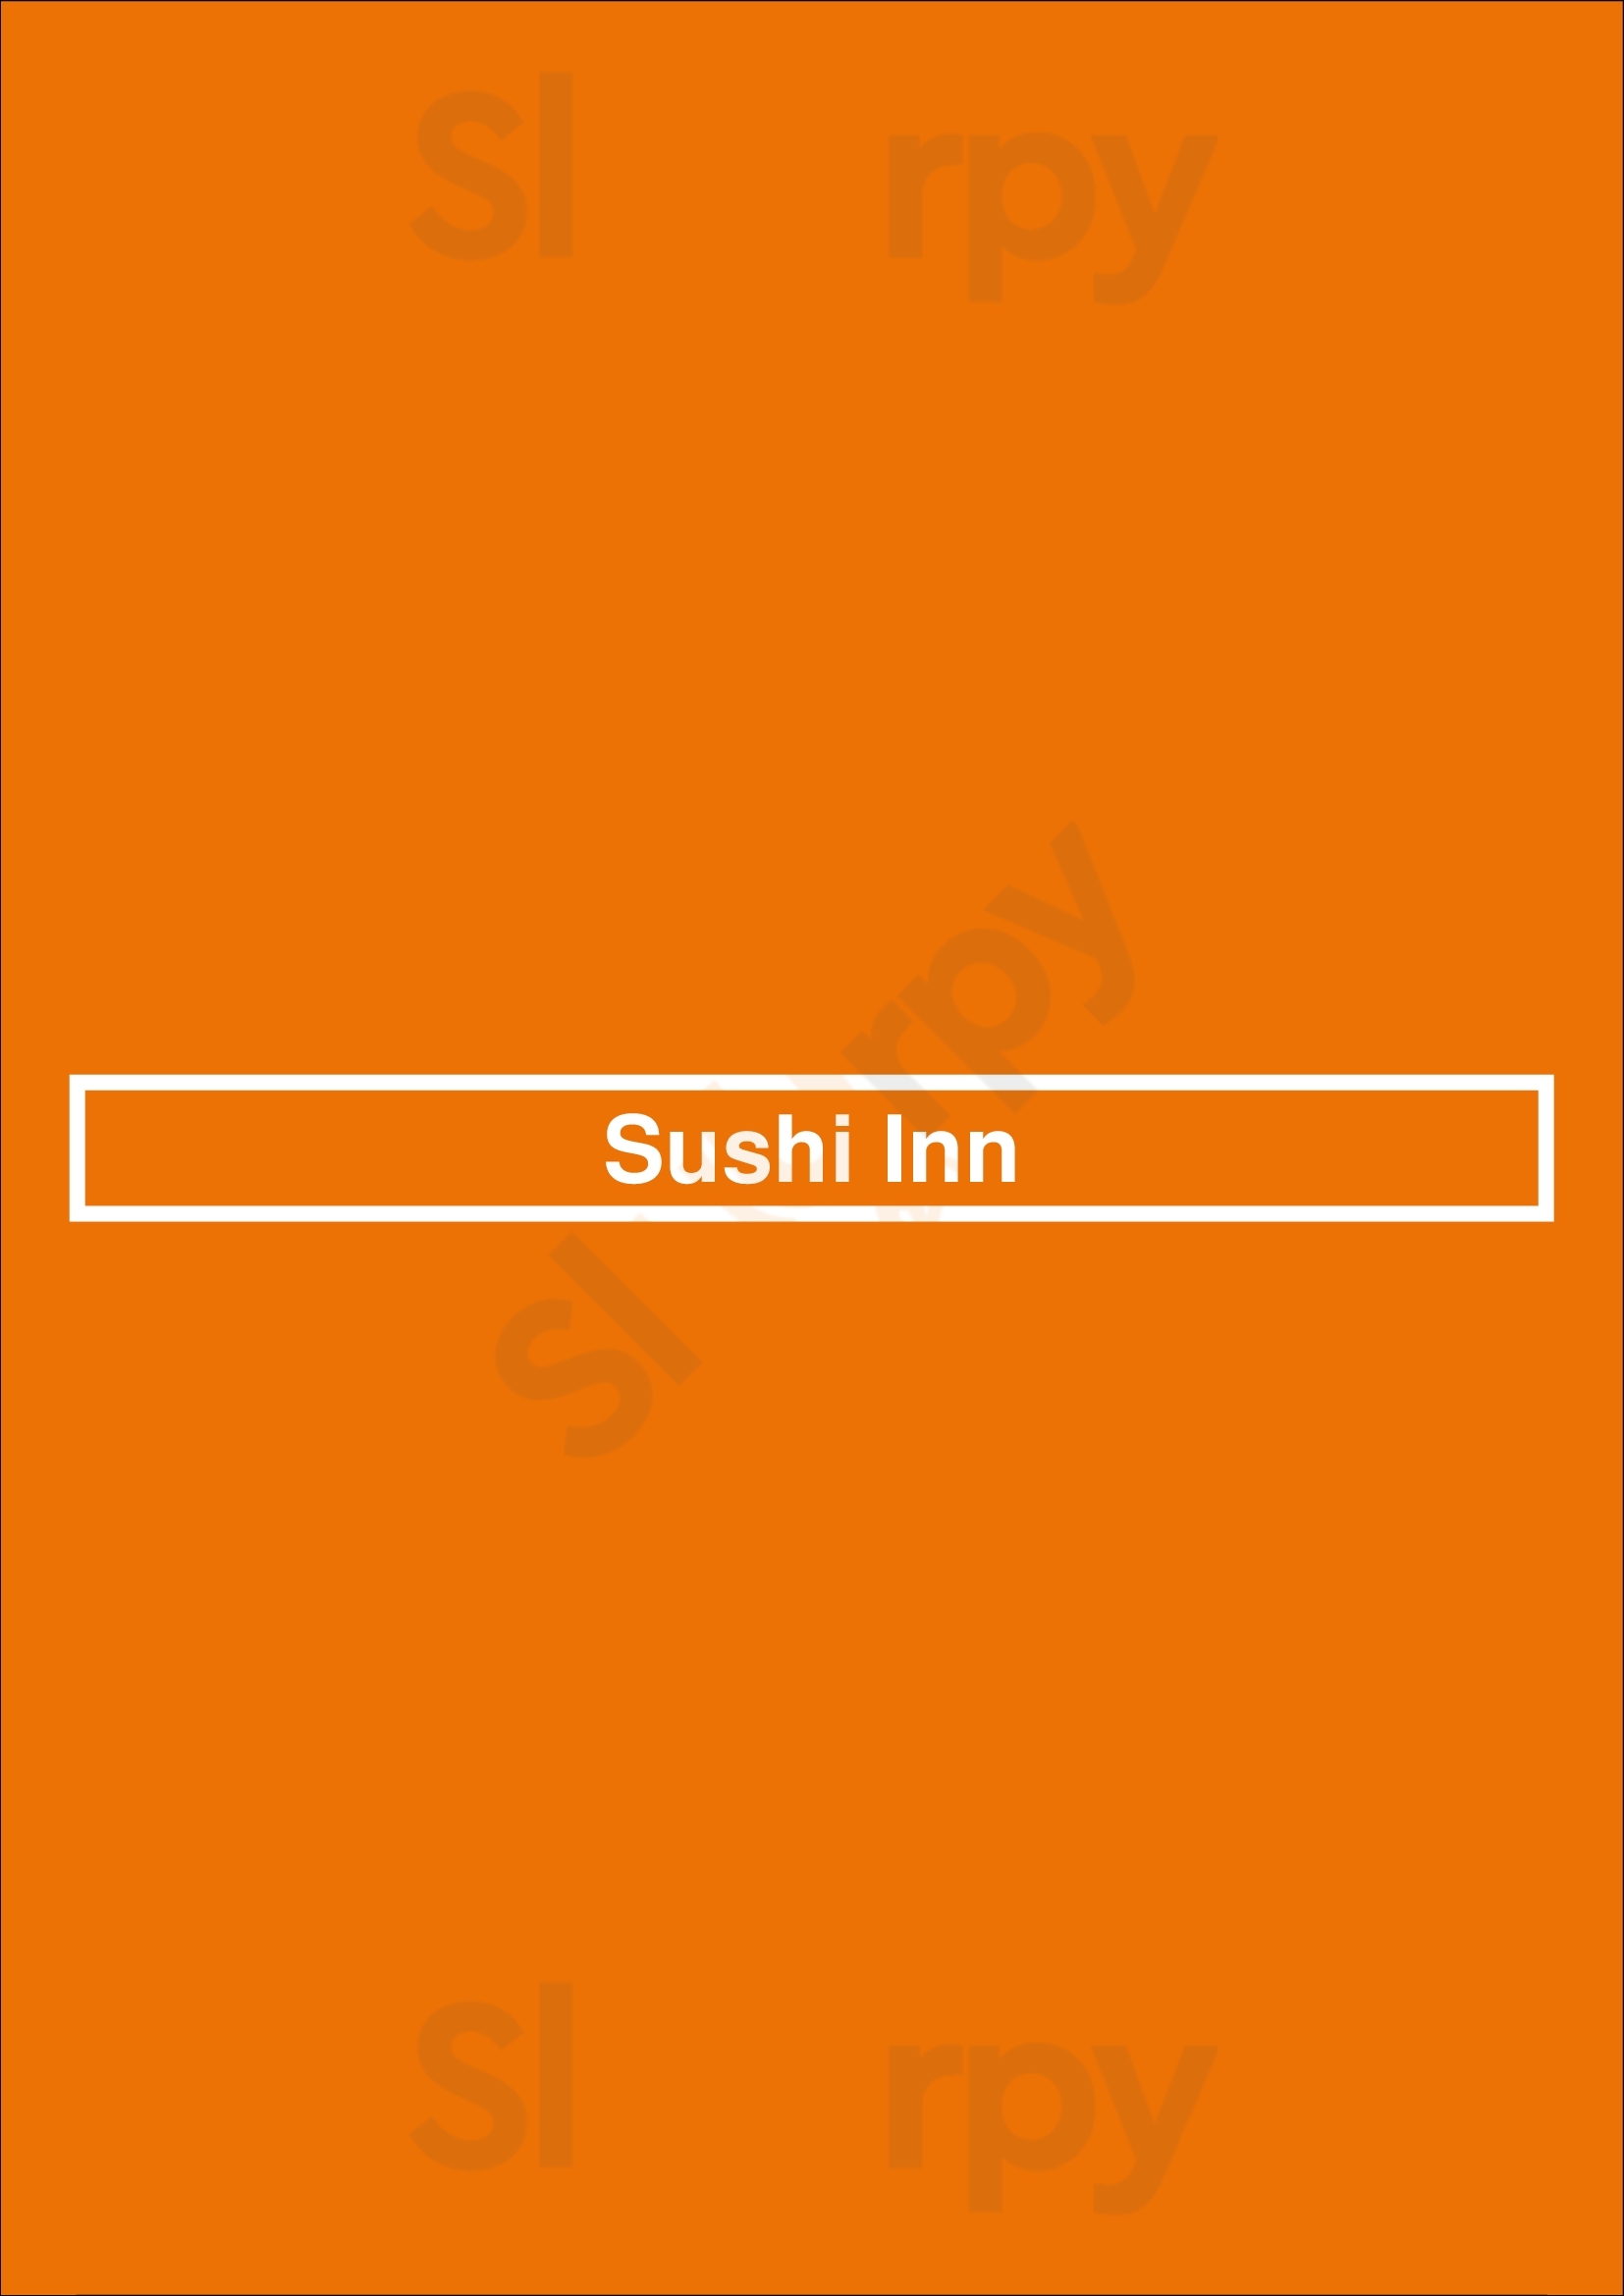 Sushi Inn London Menu - 1